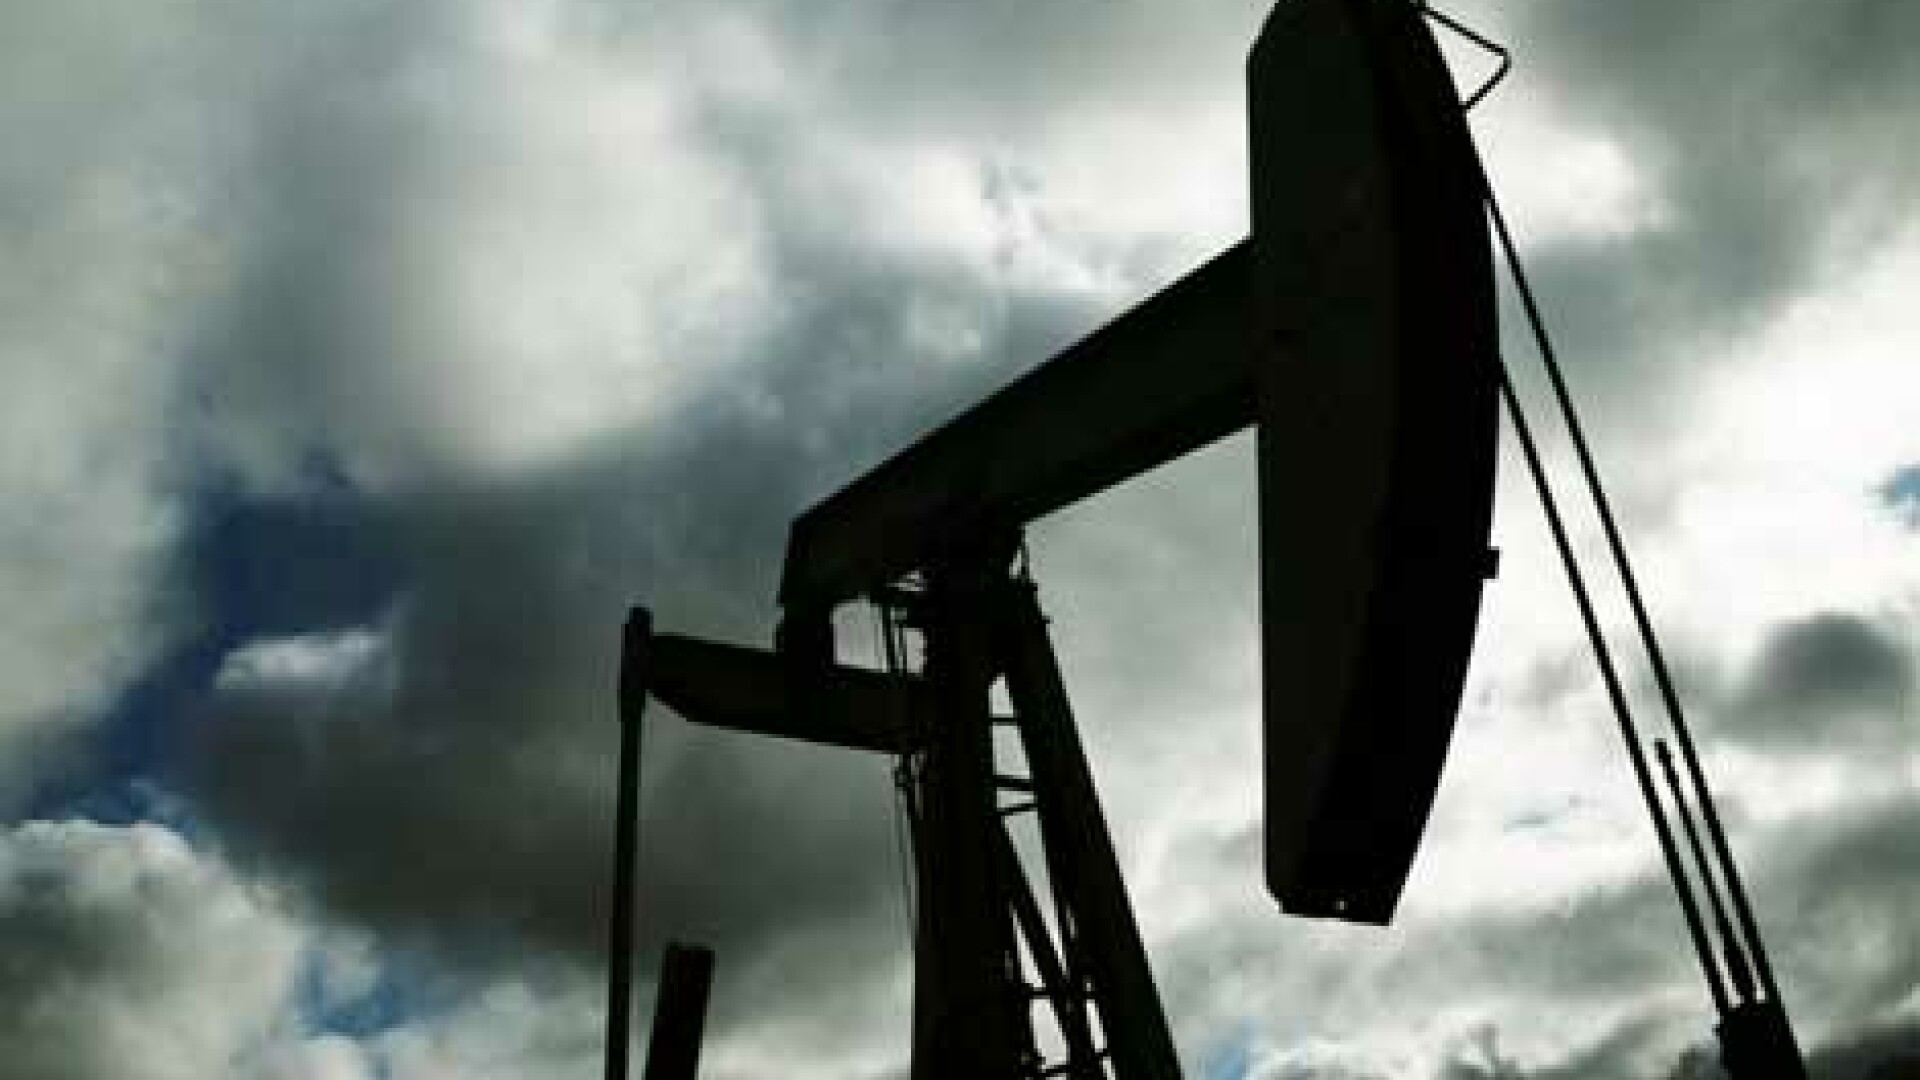 Preţul petrolului a scazut cu 4, sub 93 dolari pe baril